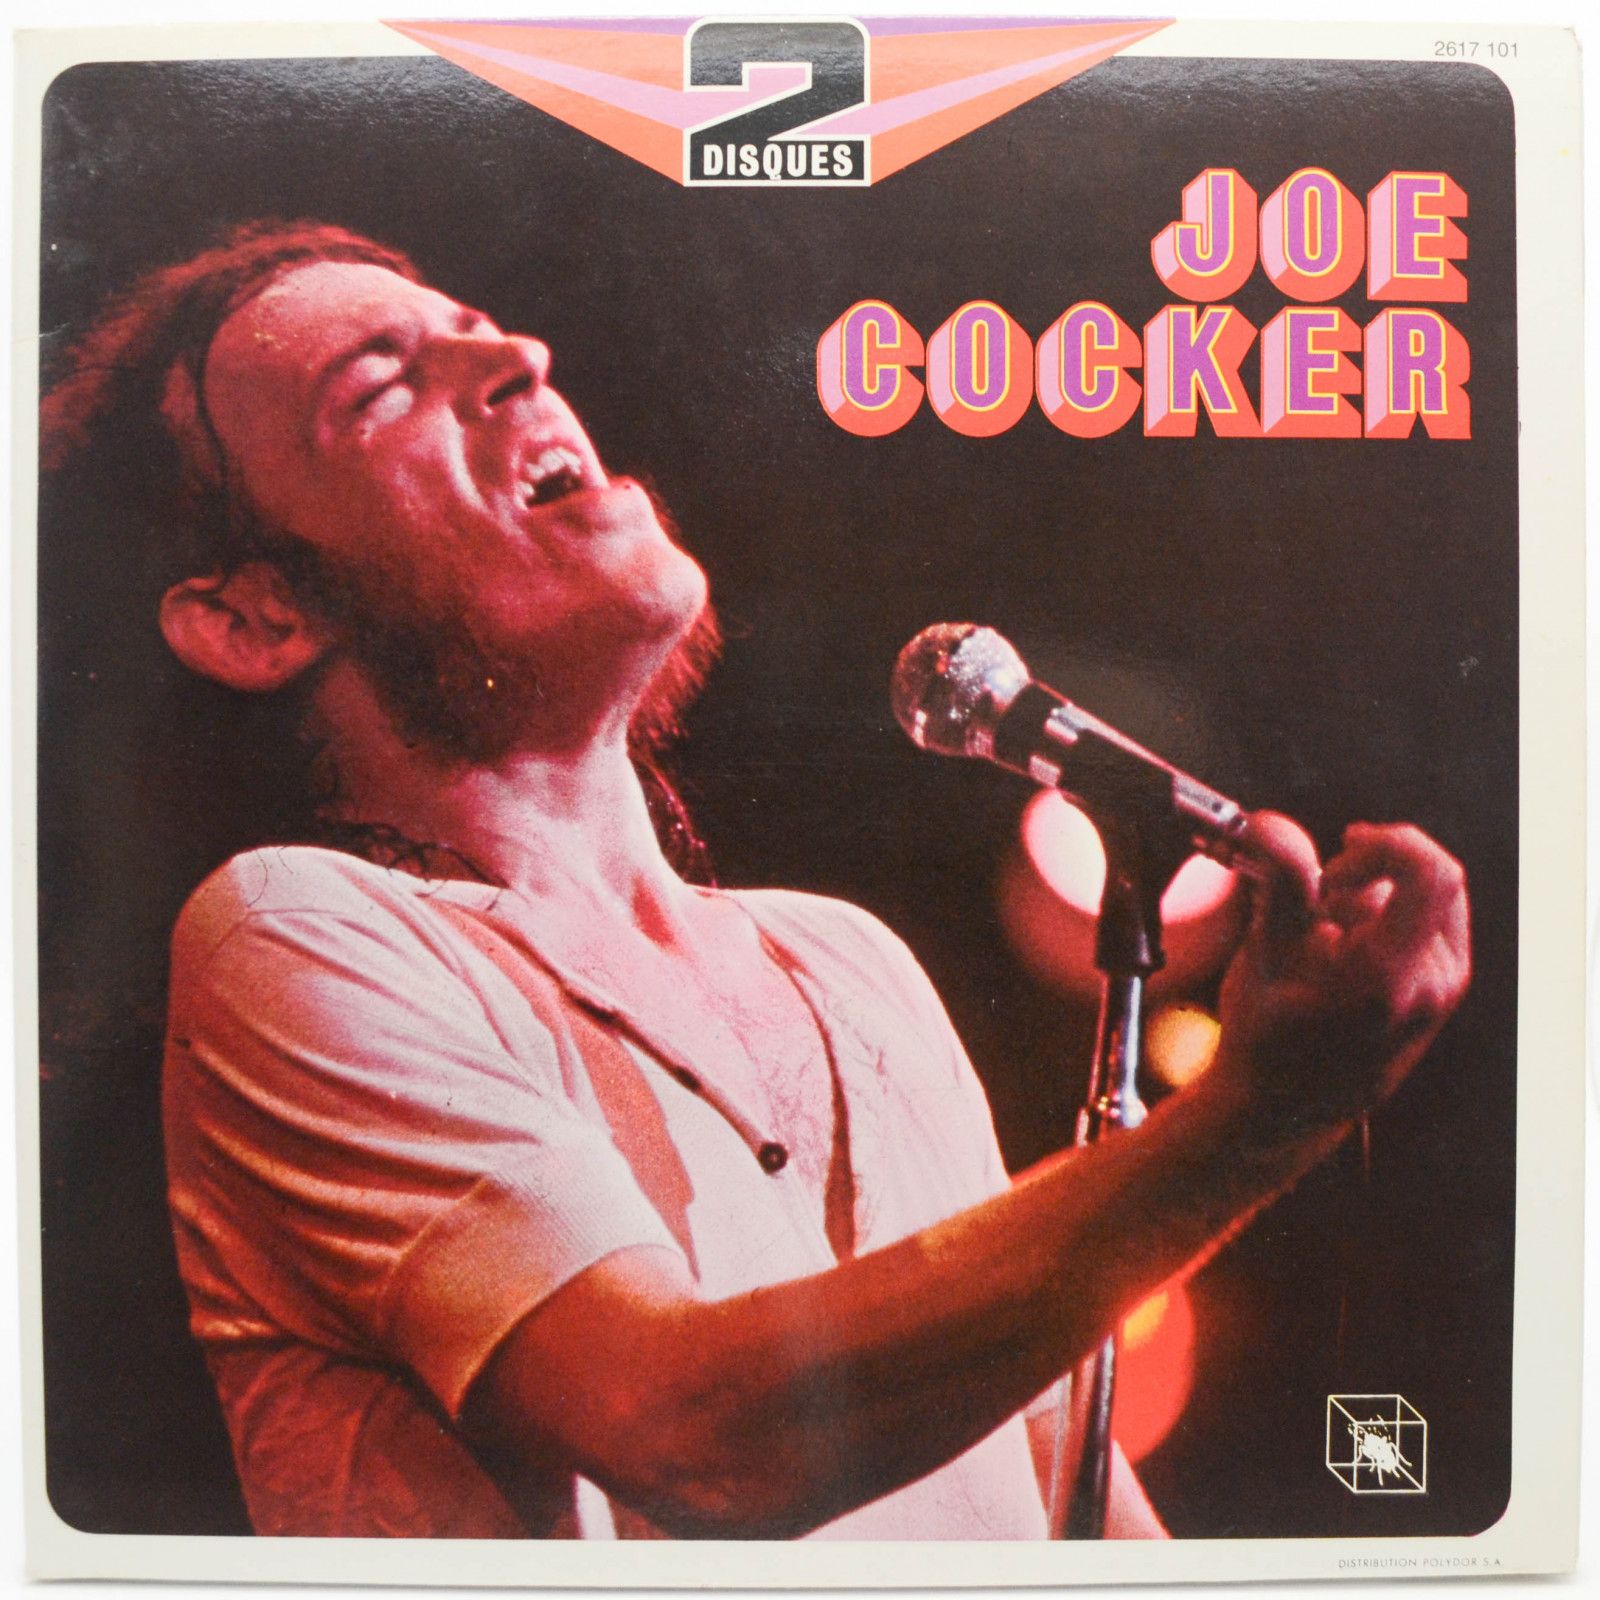 Joe Cocker — Joe Cocker (2LP), 1975